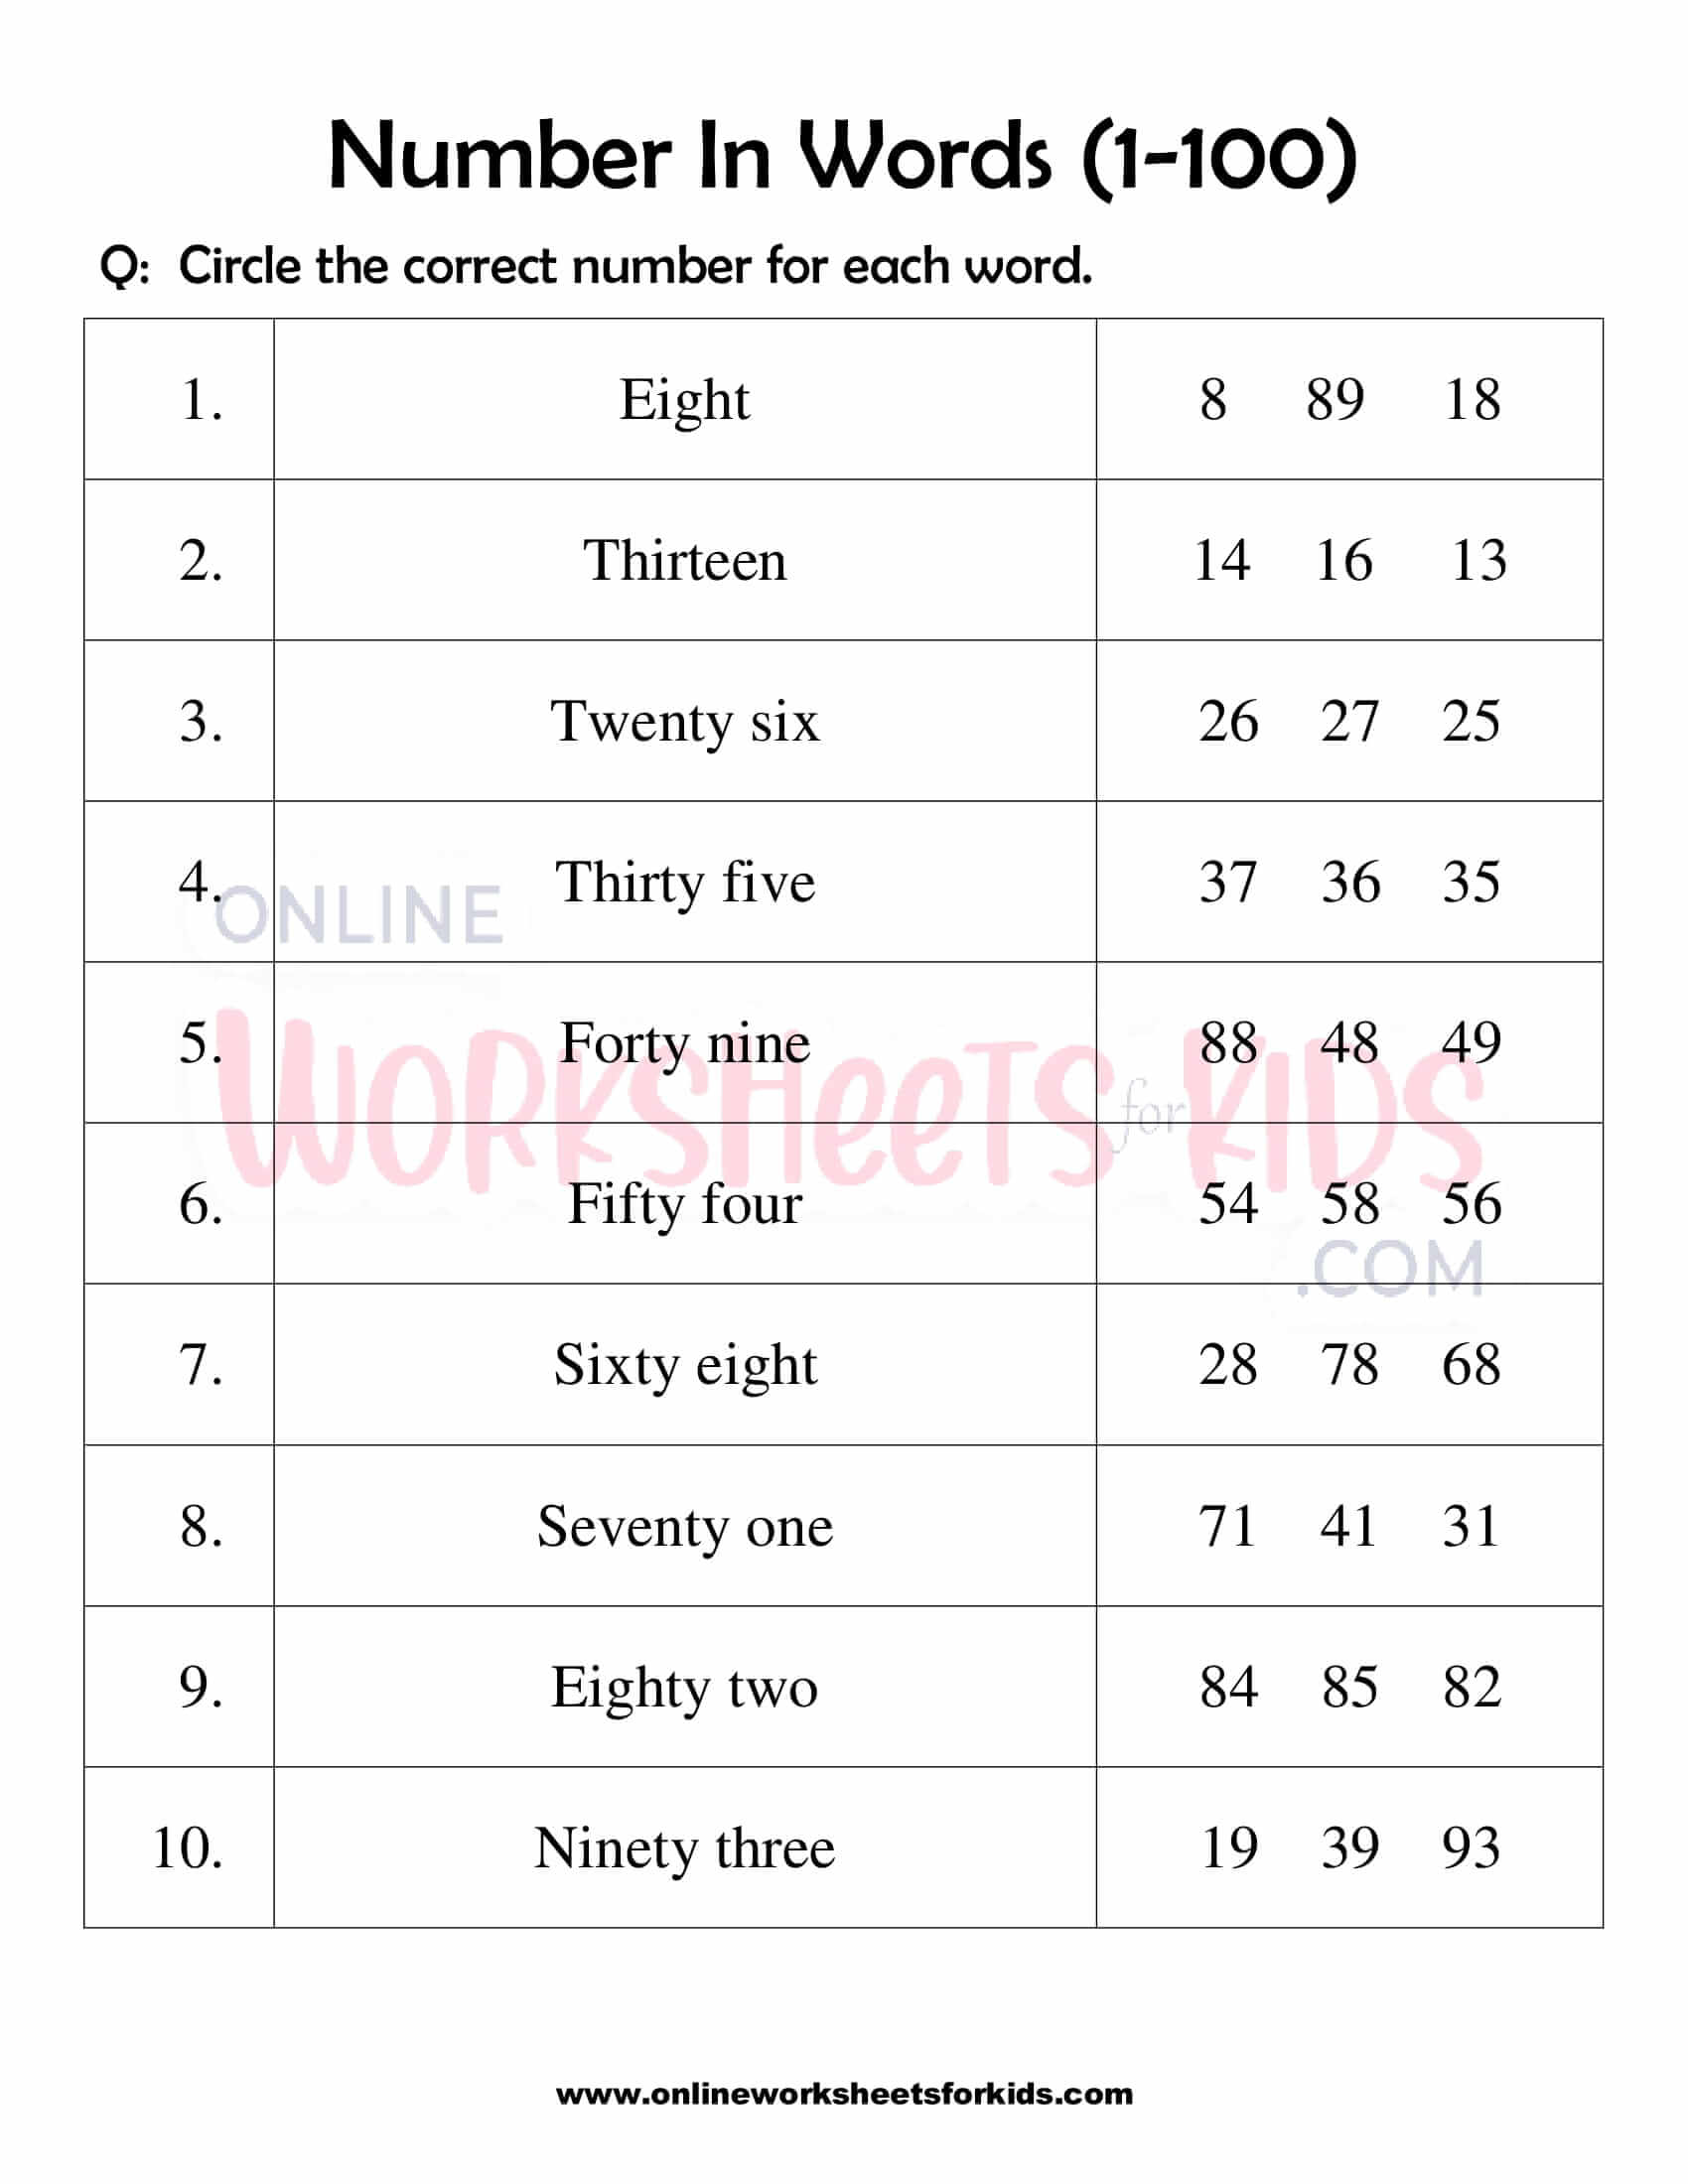 number-words-worksheet-1-100-for-grade-1-1